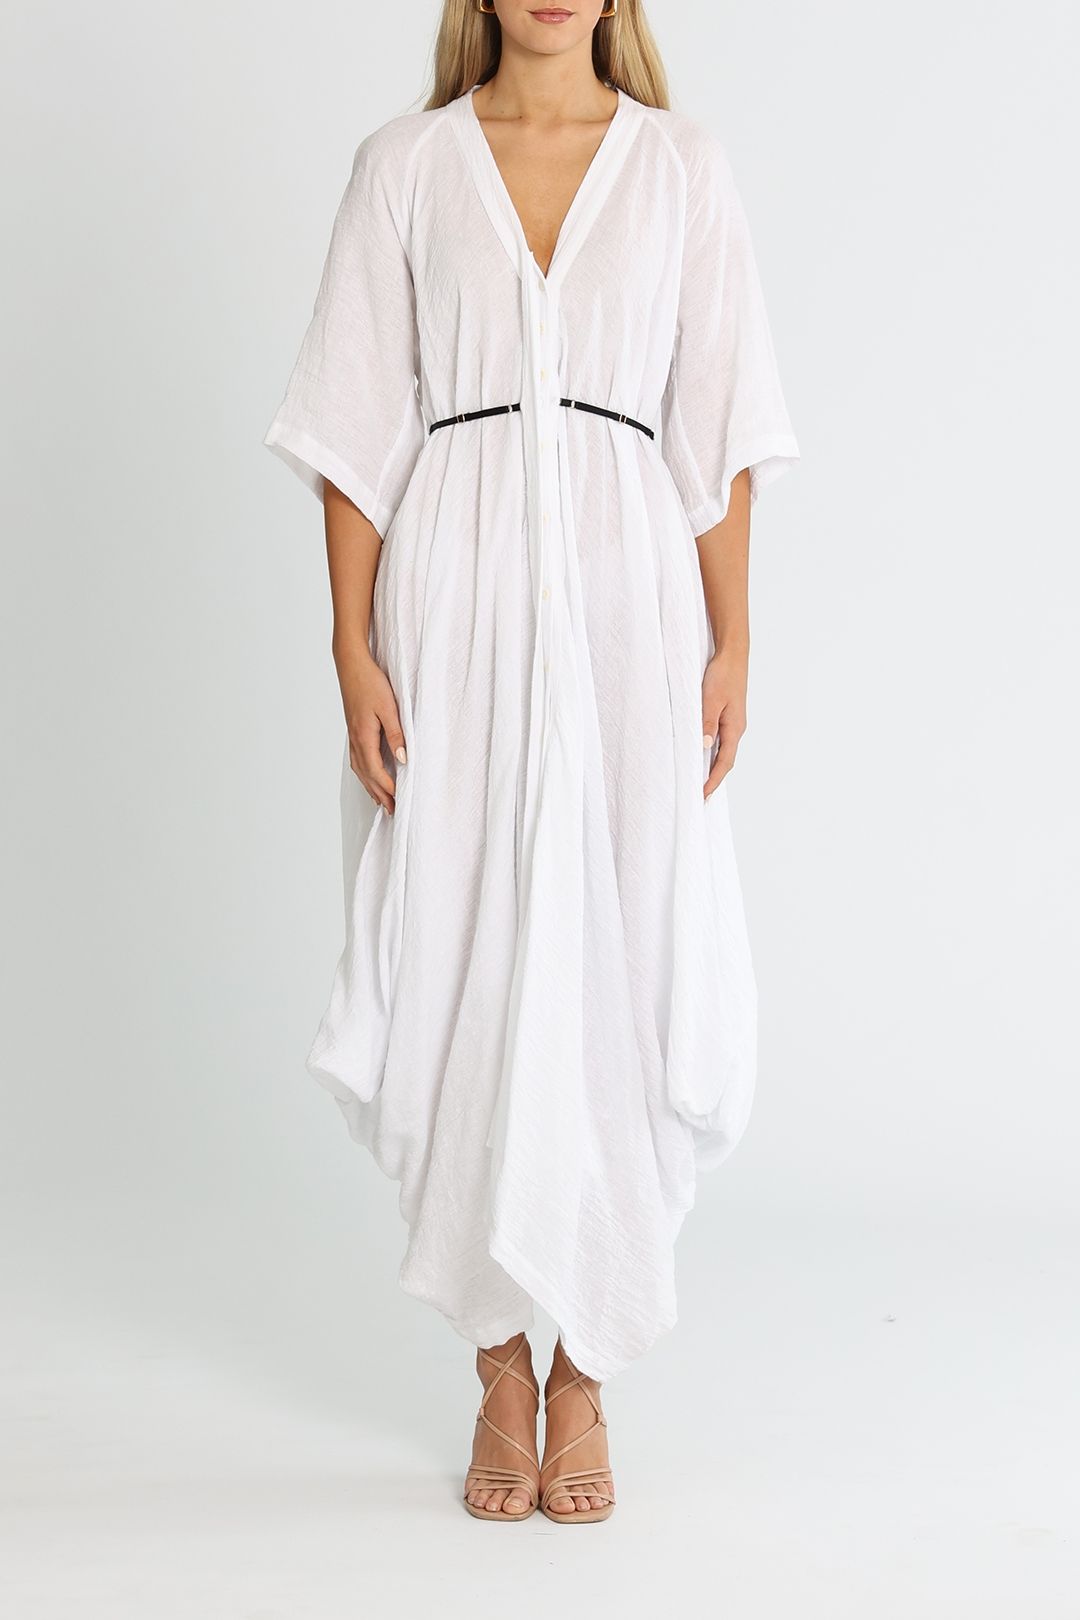 KITX Ocean Angel Dress White